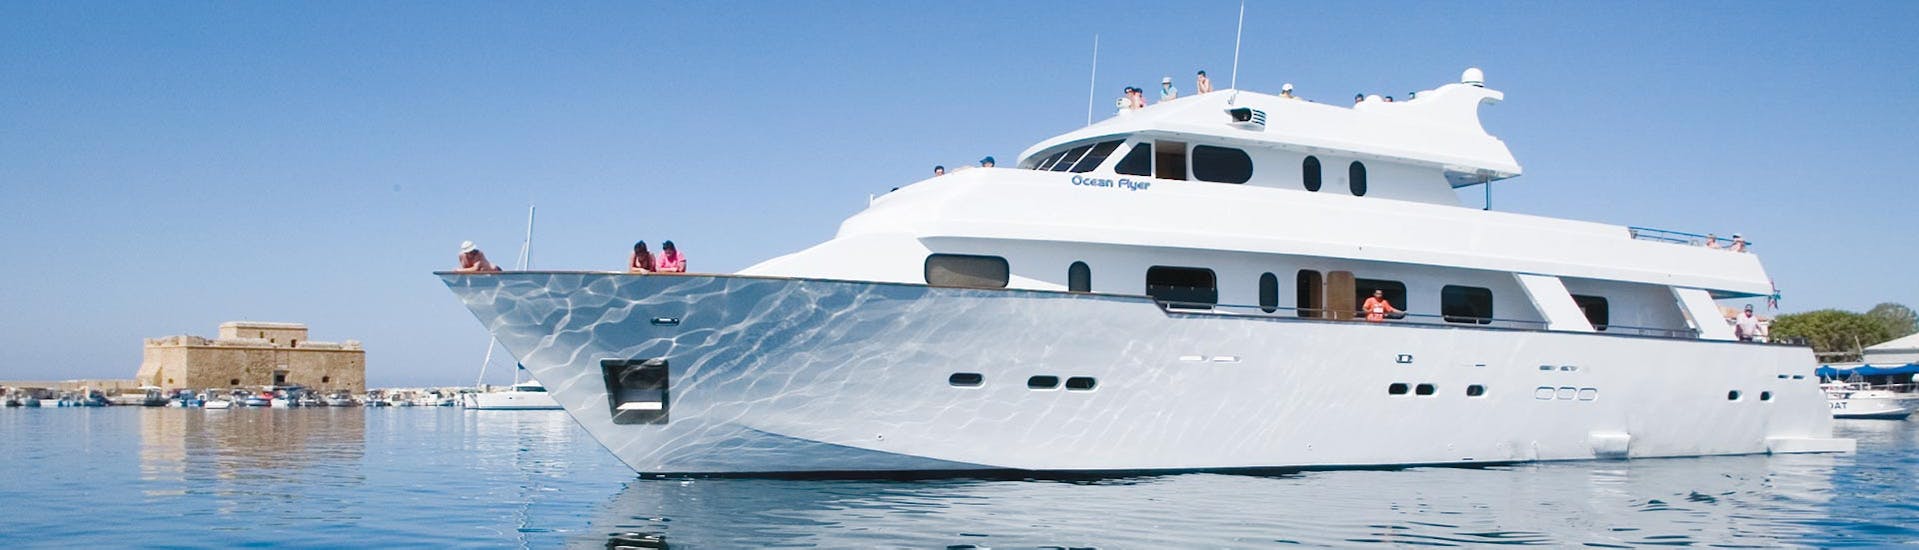 Le Ocean Flyer ayant jeté l'ancre pendant la balade en yacht de luxe dans la baie de corail et les grottes marines - pour adultes uniquement avec Paphos Sea Cruises